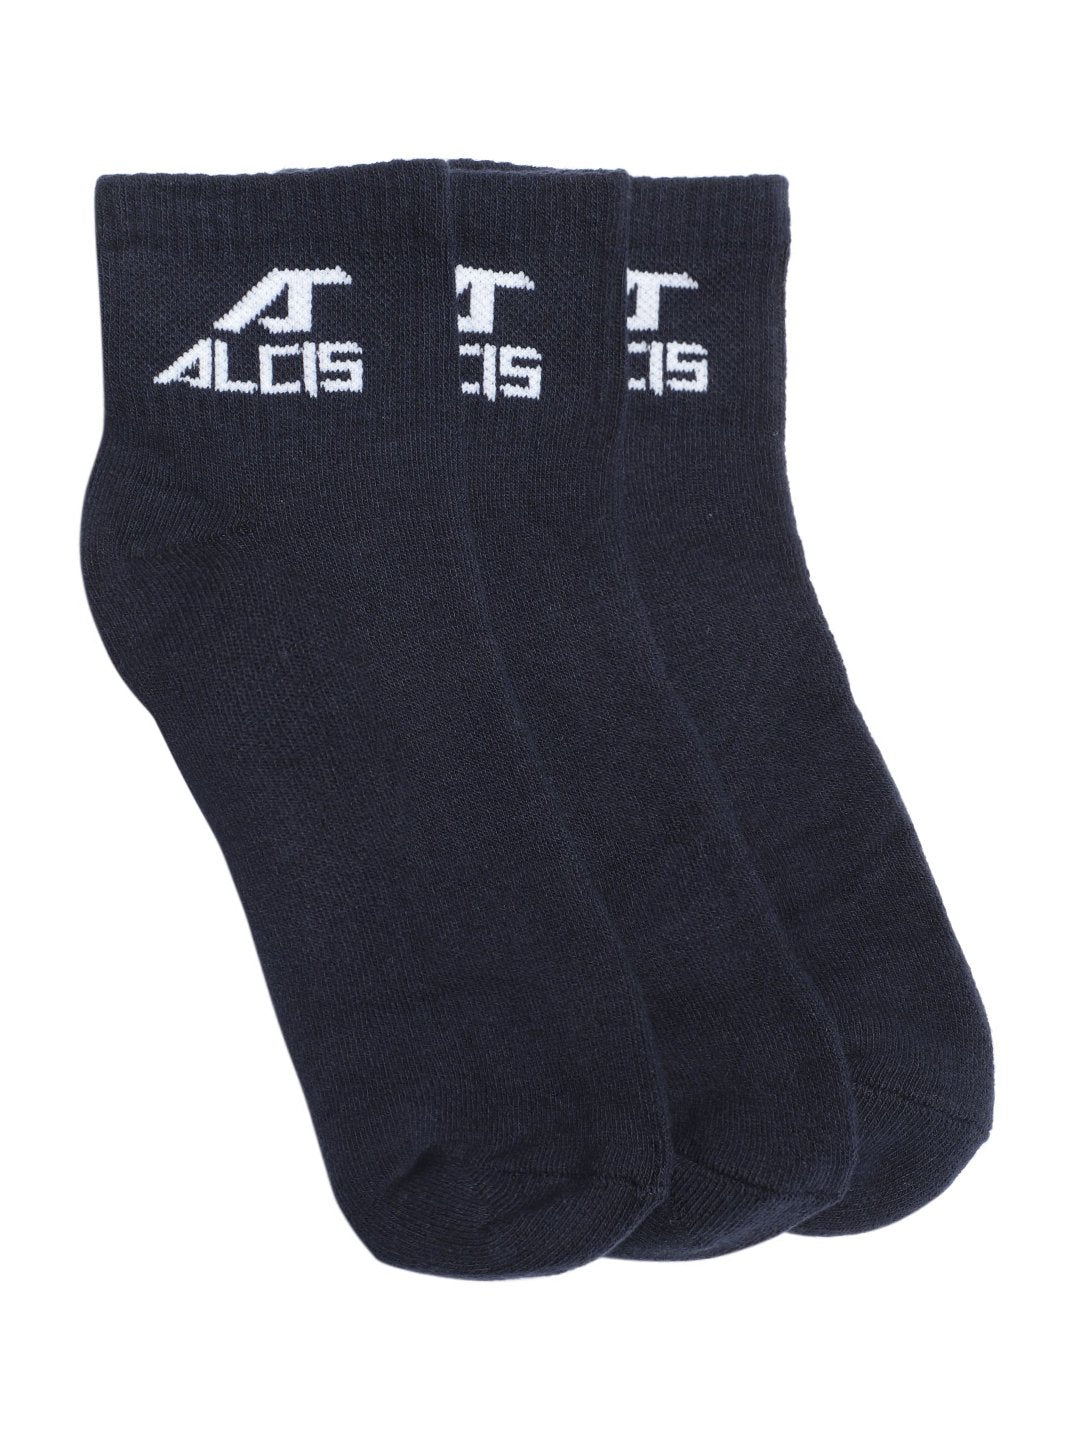 Alcis Socks Pack of 3